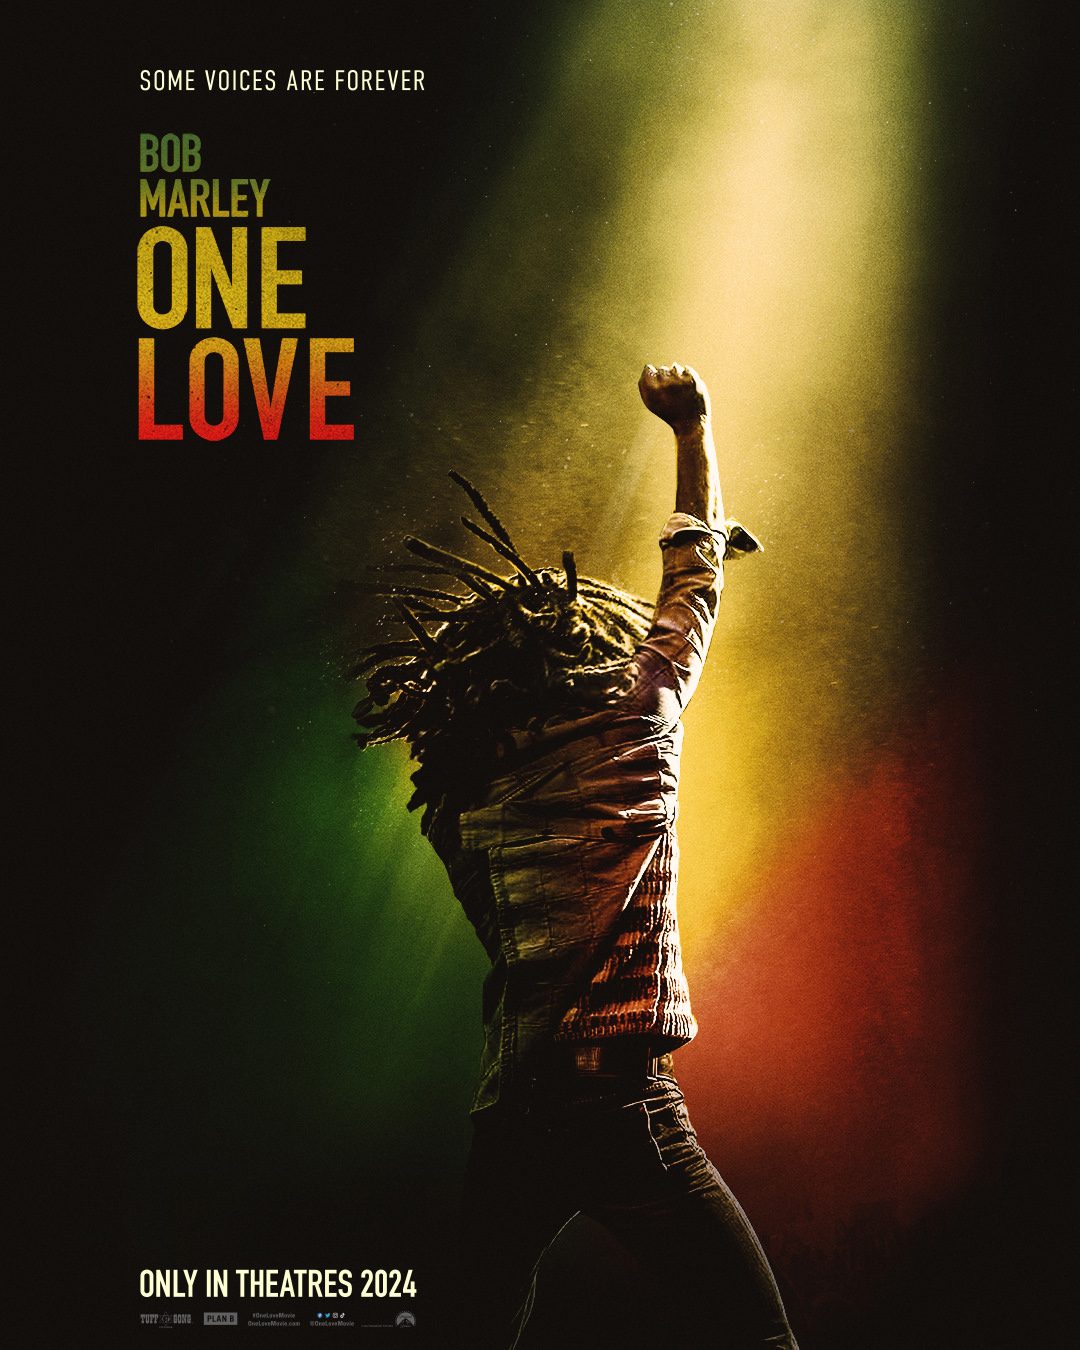 پوستر فیلم بیوگرافی باب مارلی: یک عشق